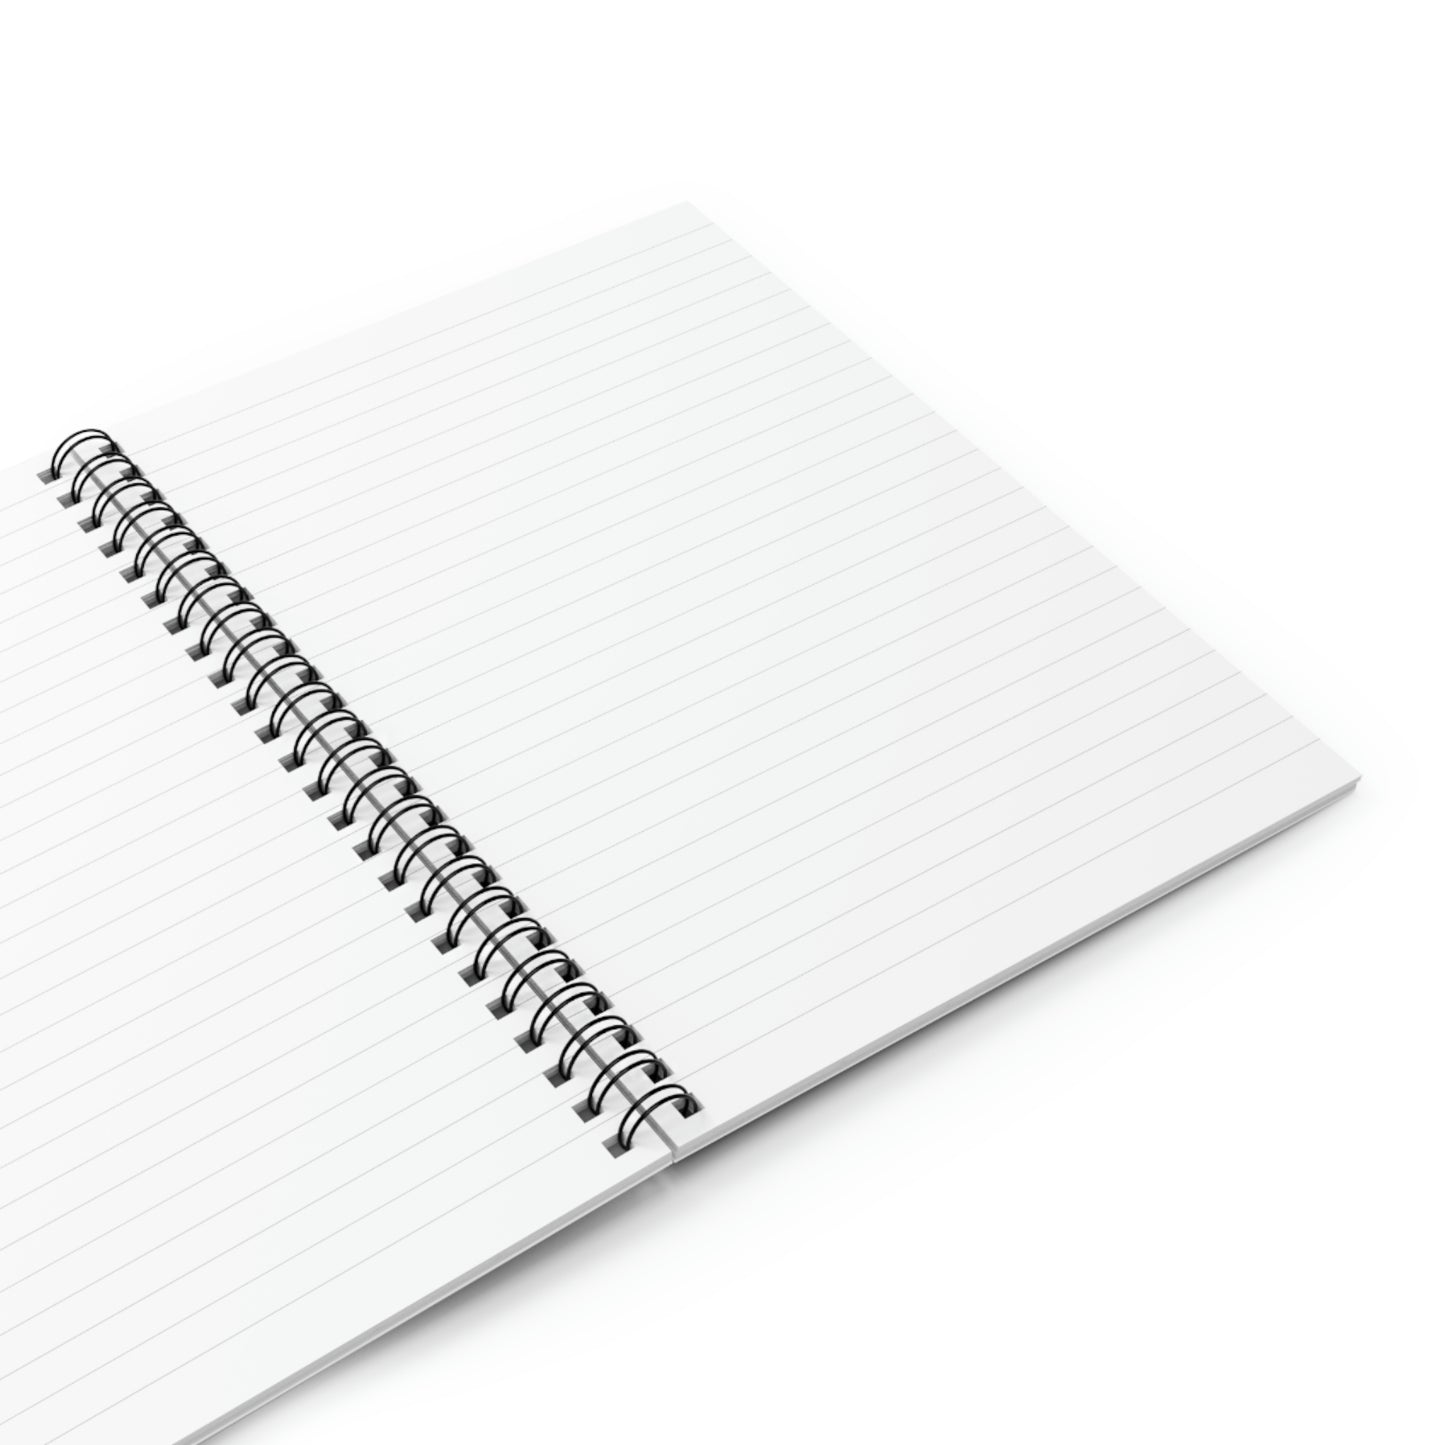 TIGER - Spiral Notebook - Ruled Line